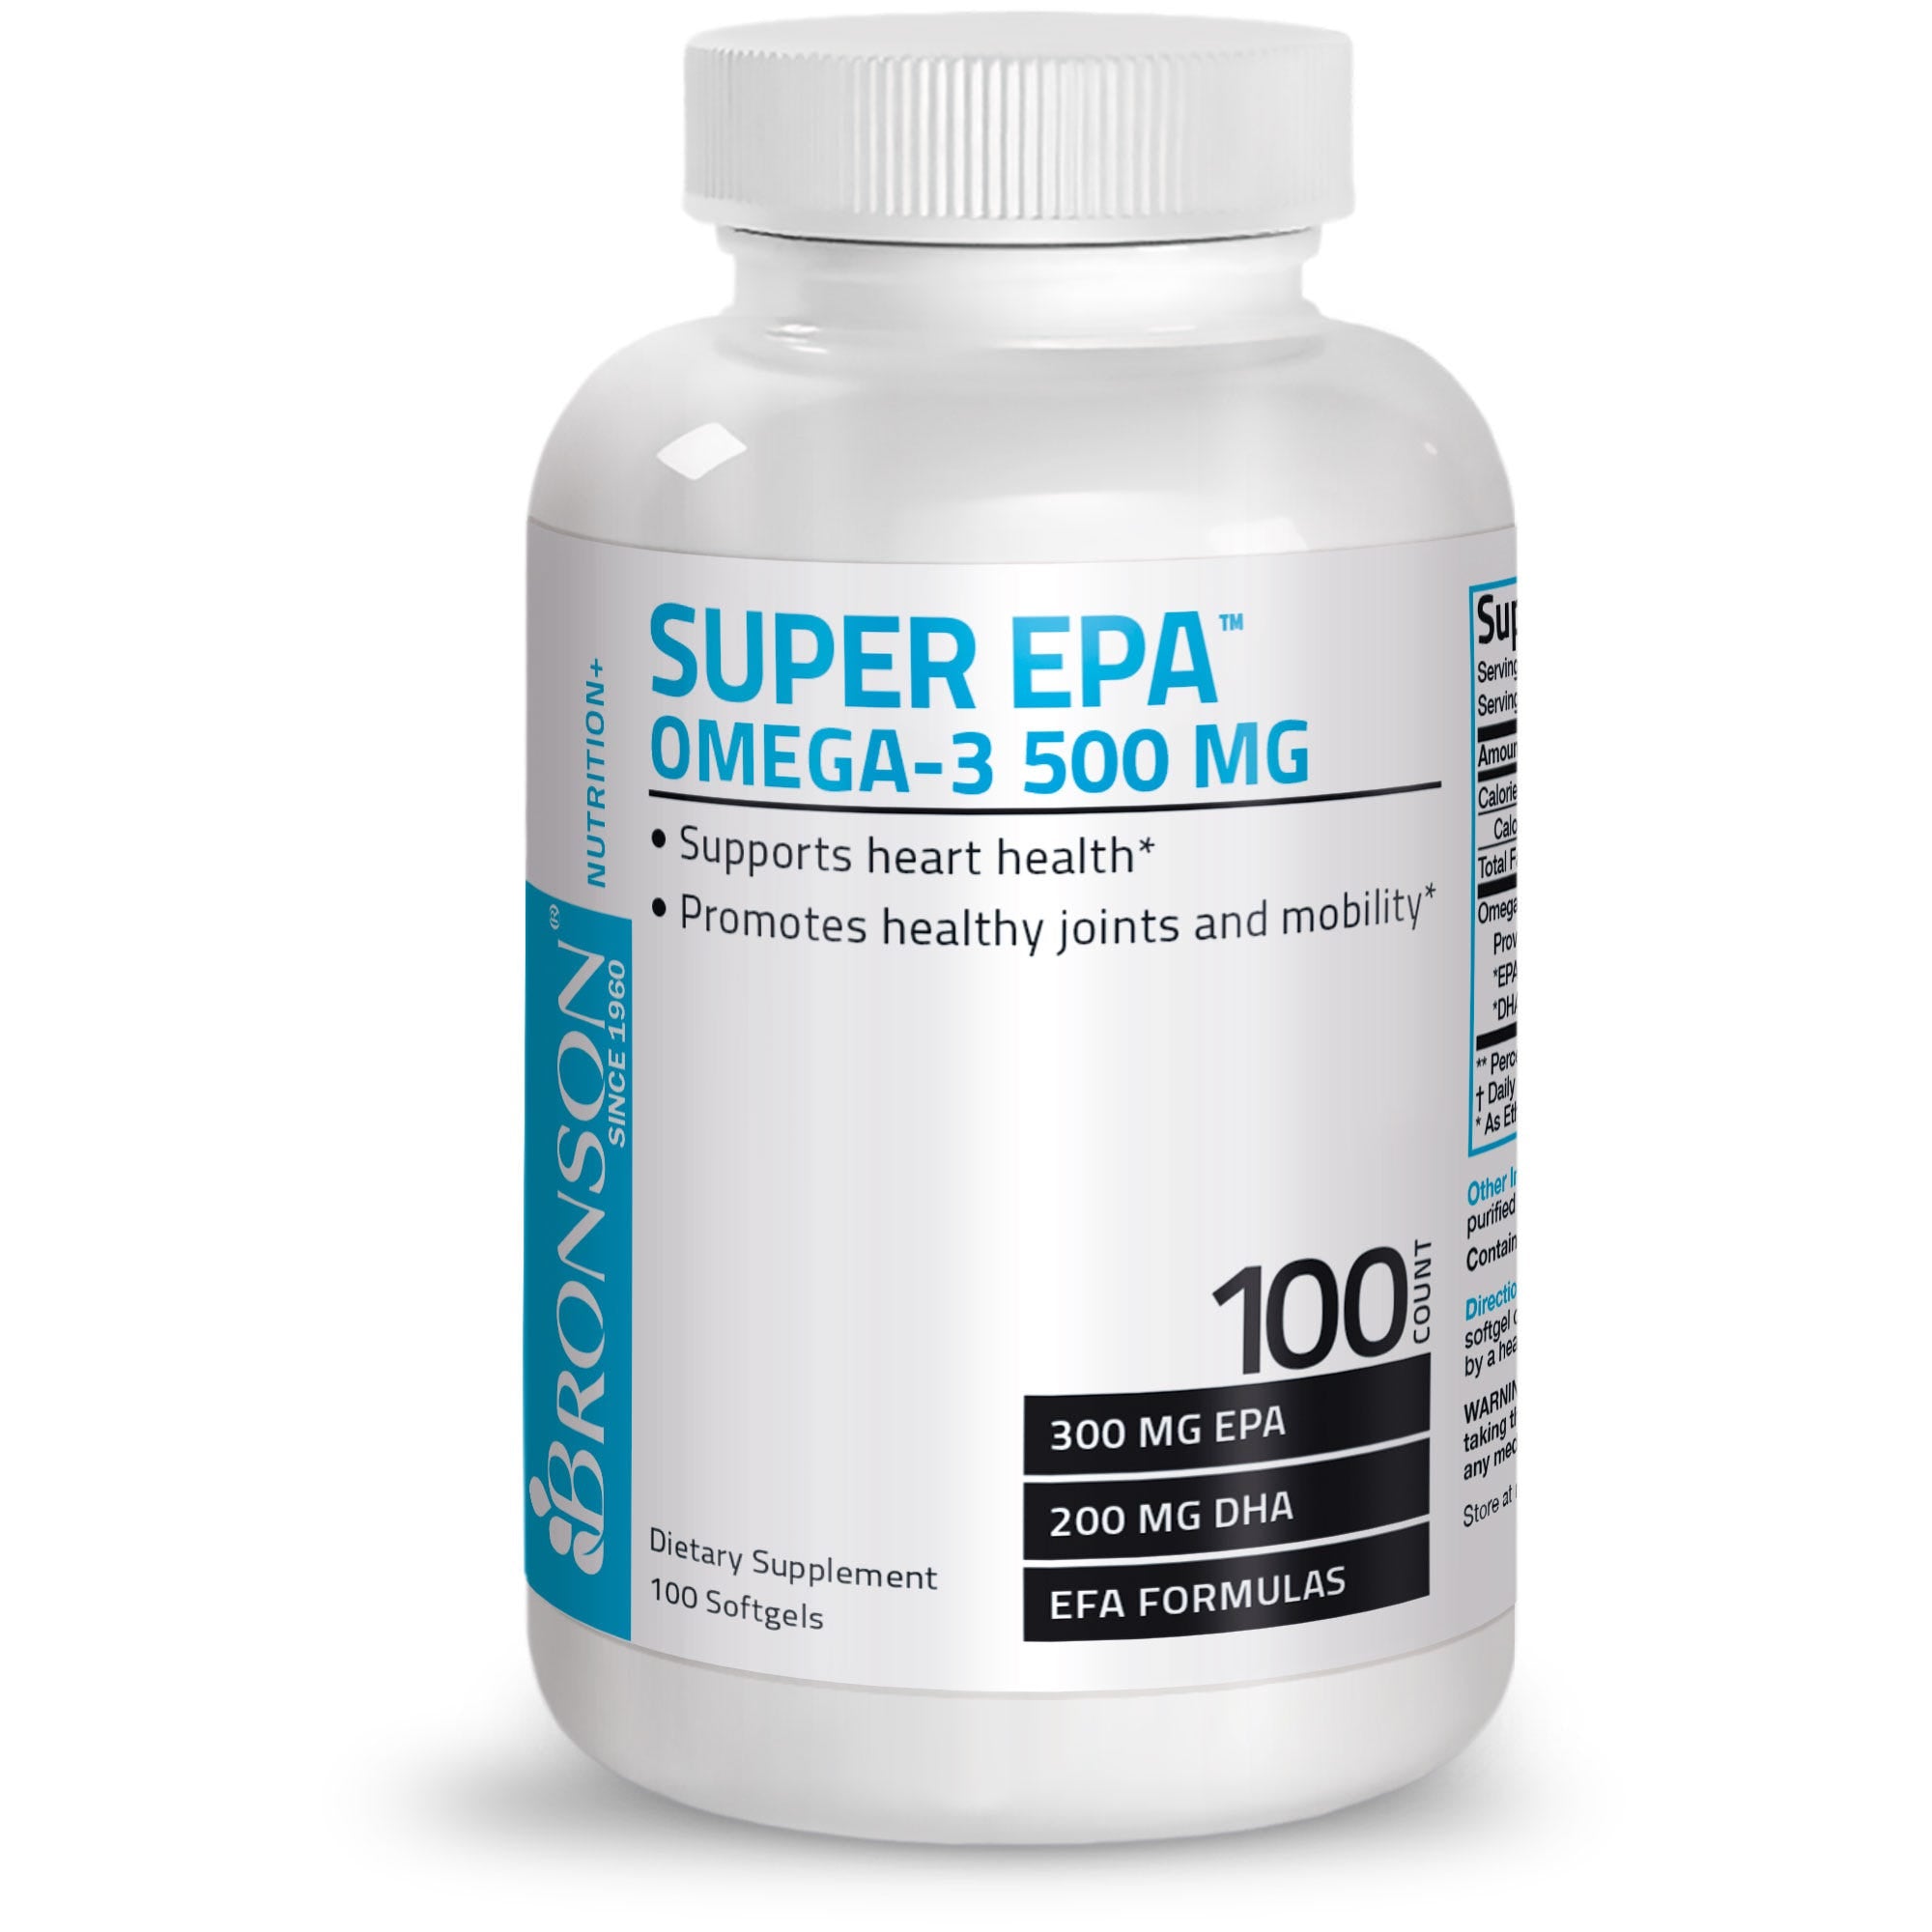 Super Omega-3 EPA DHA Fatty Acids - 500 mg